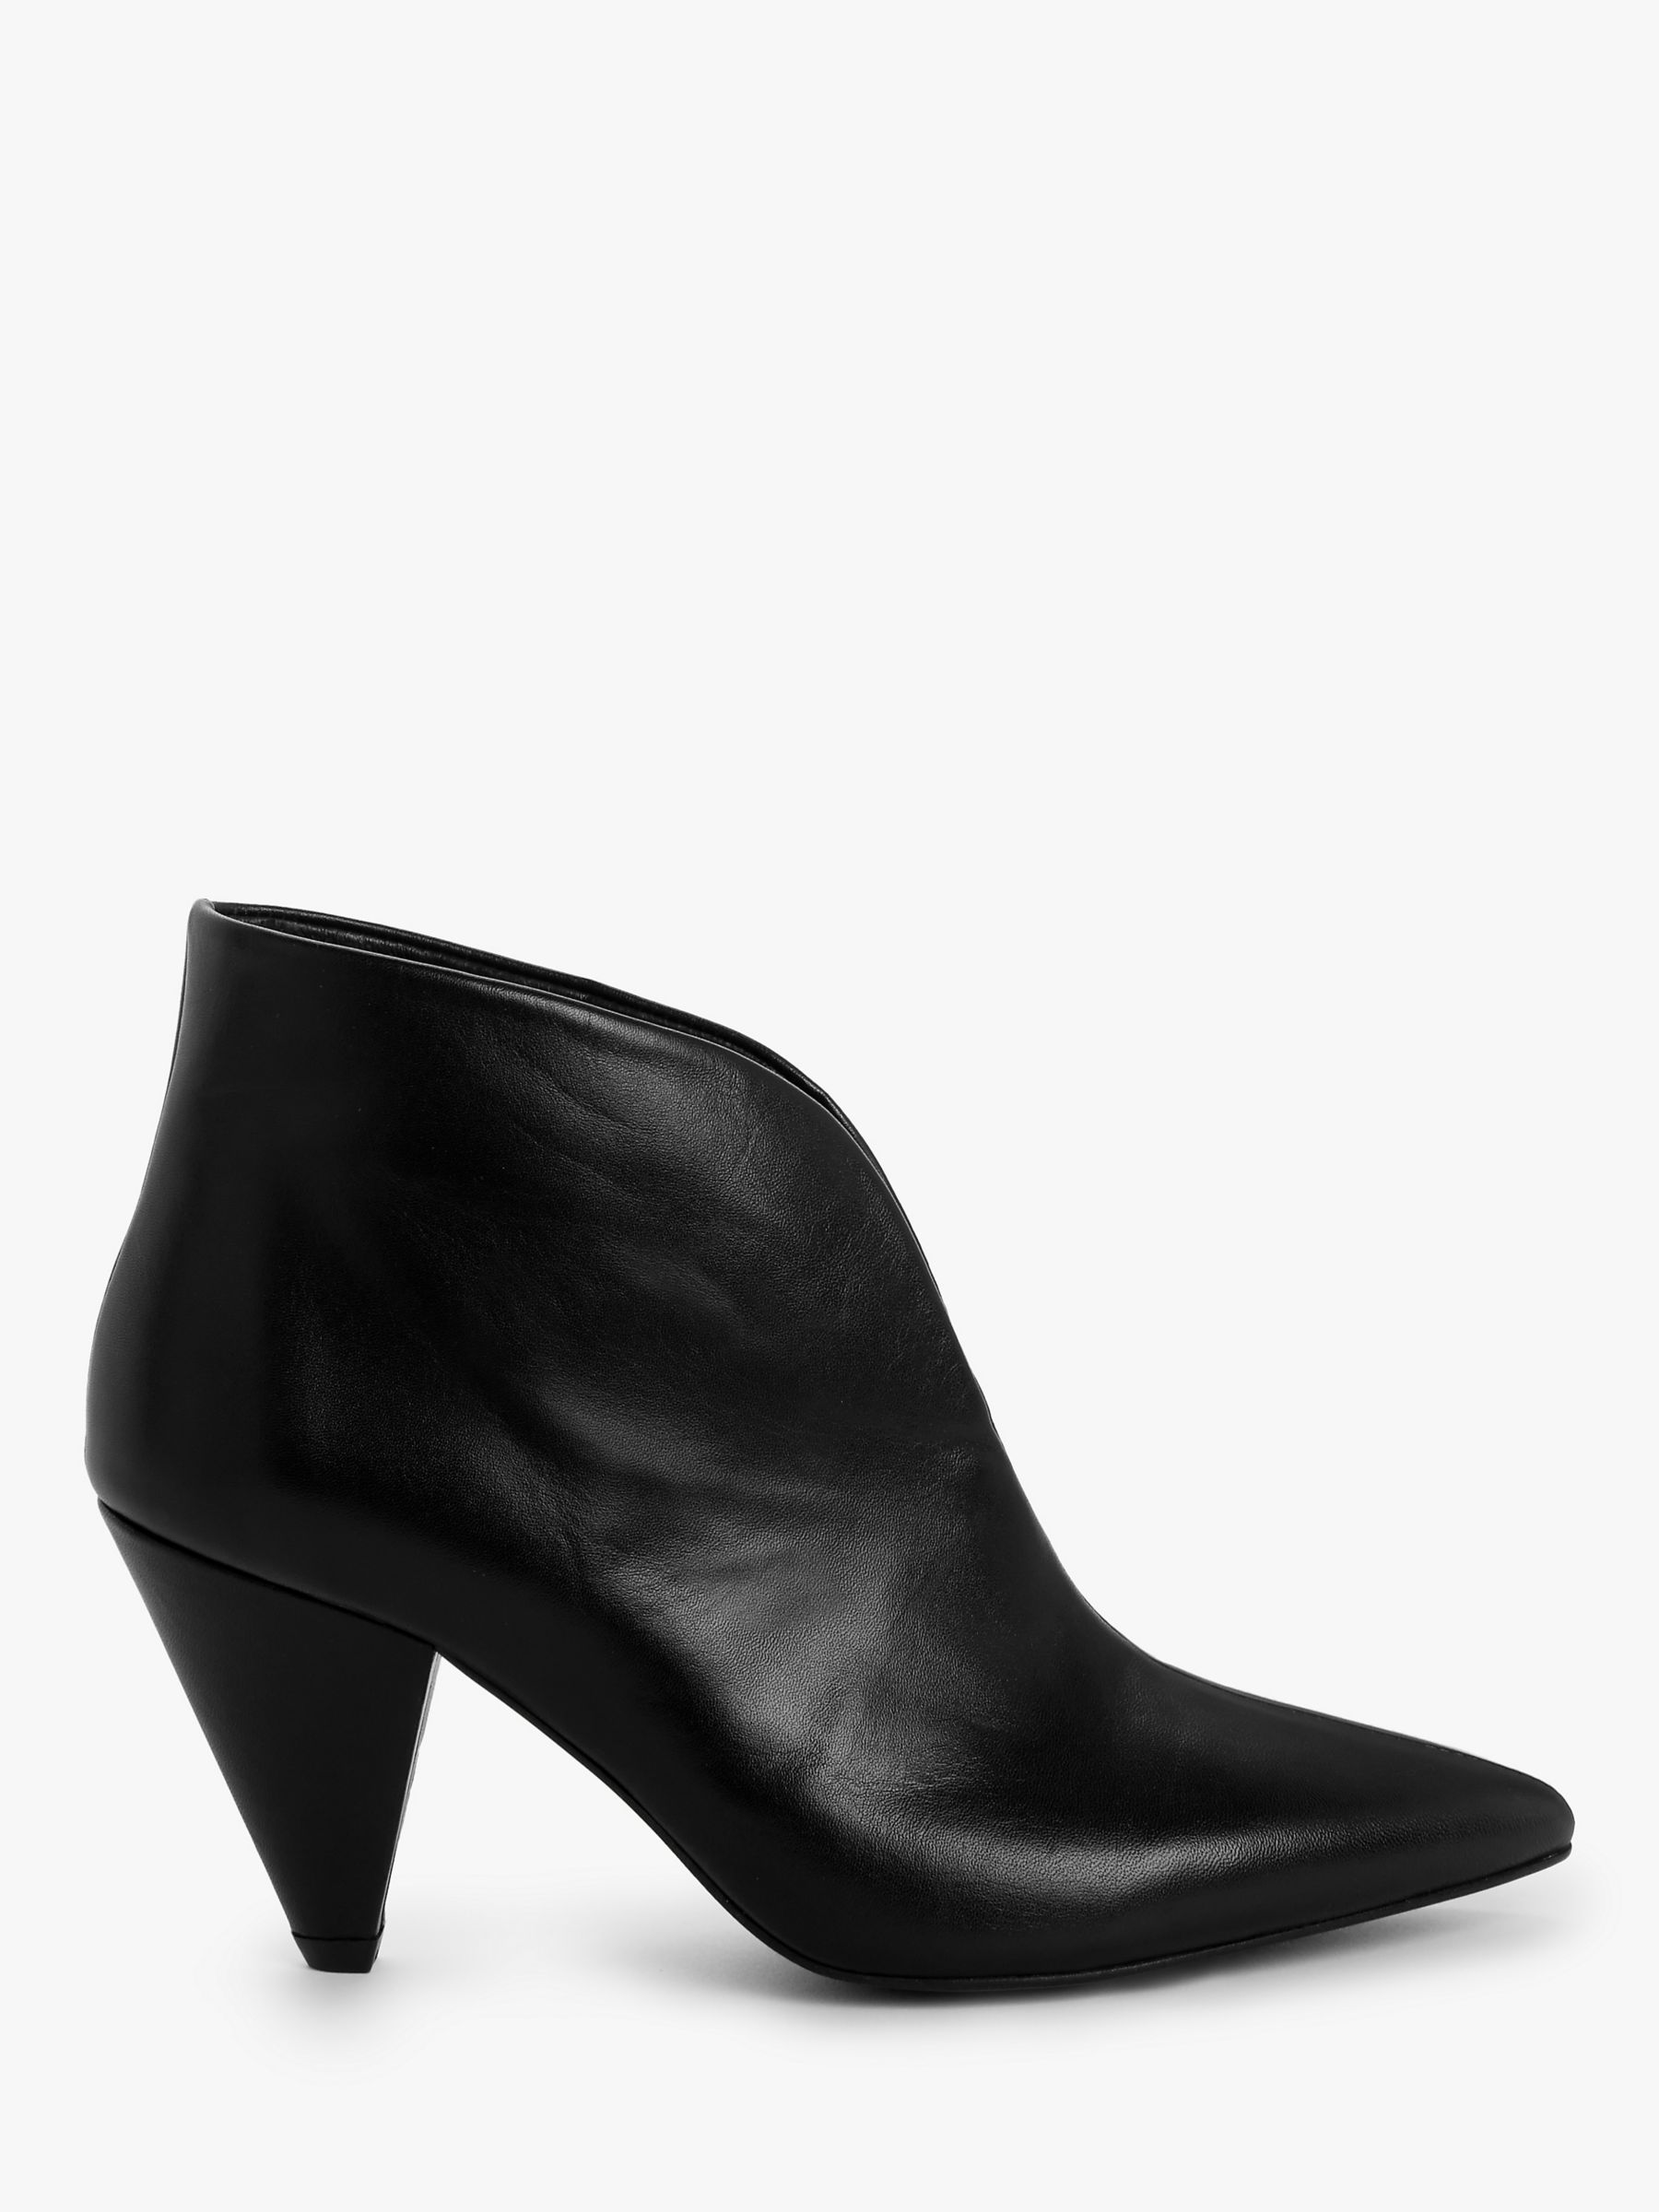 Kin Poppy 2 Leather Shoe Boots, Black